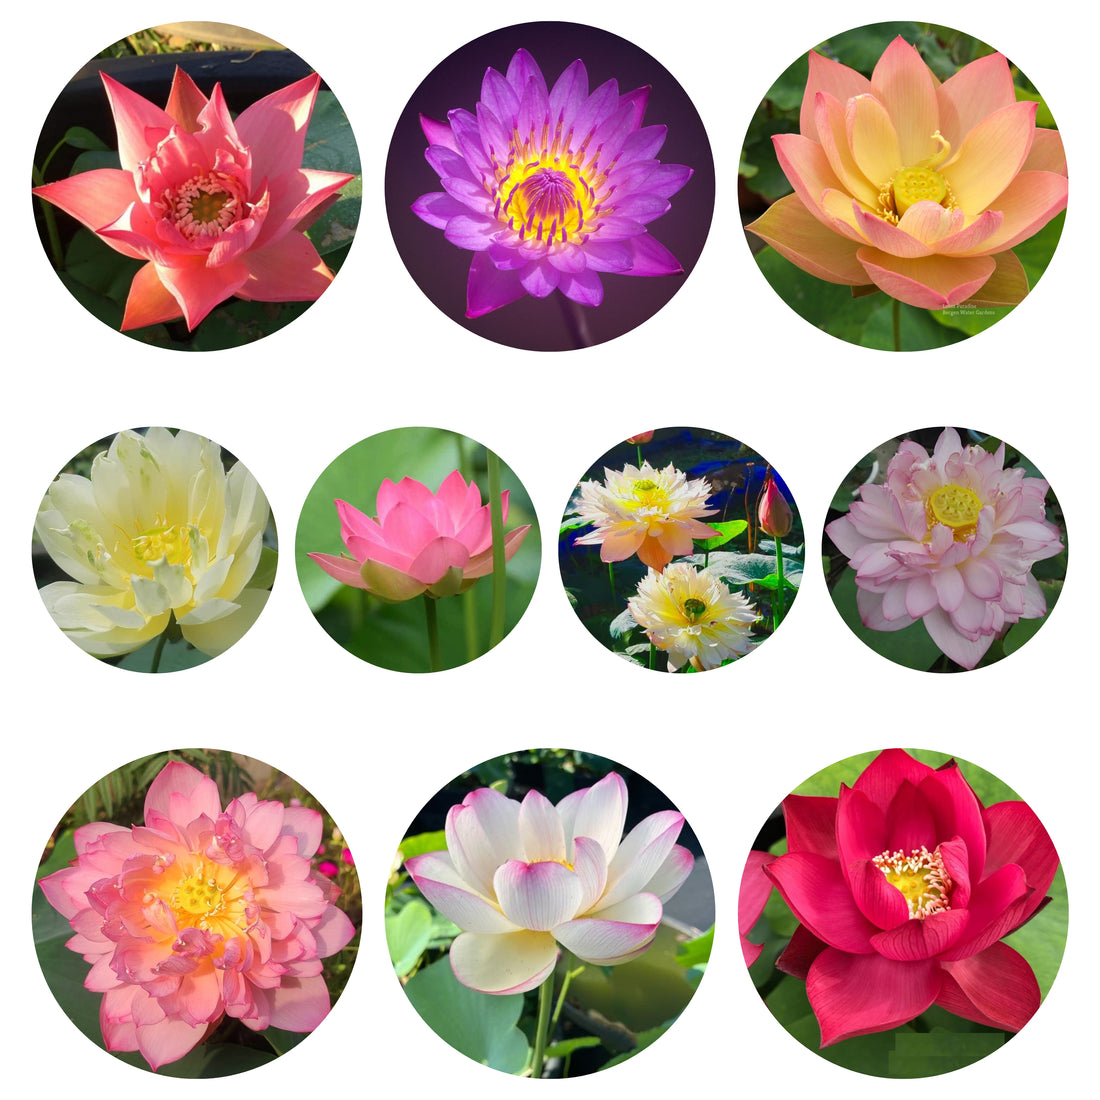 Lotus Tuber - 10 Assorted Varieties